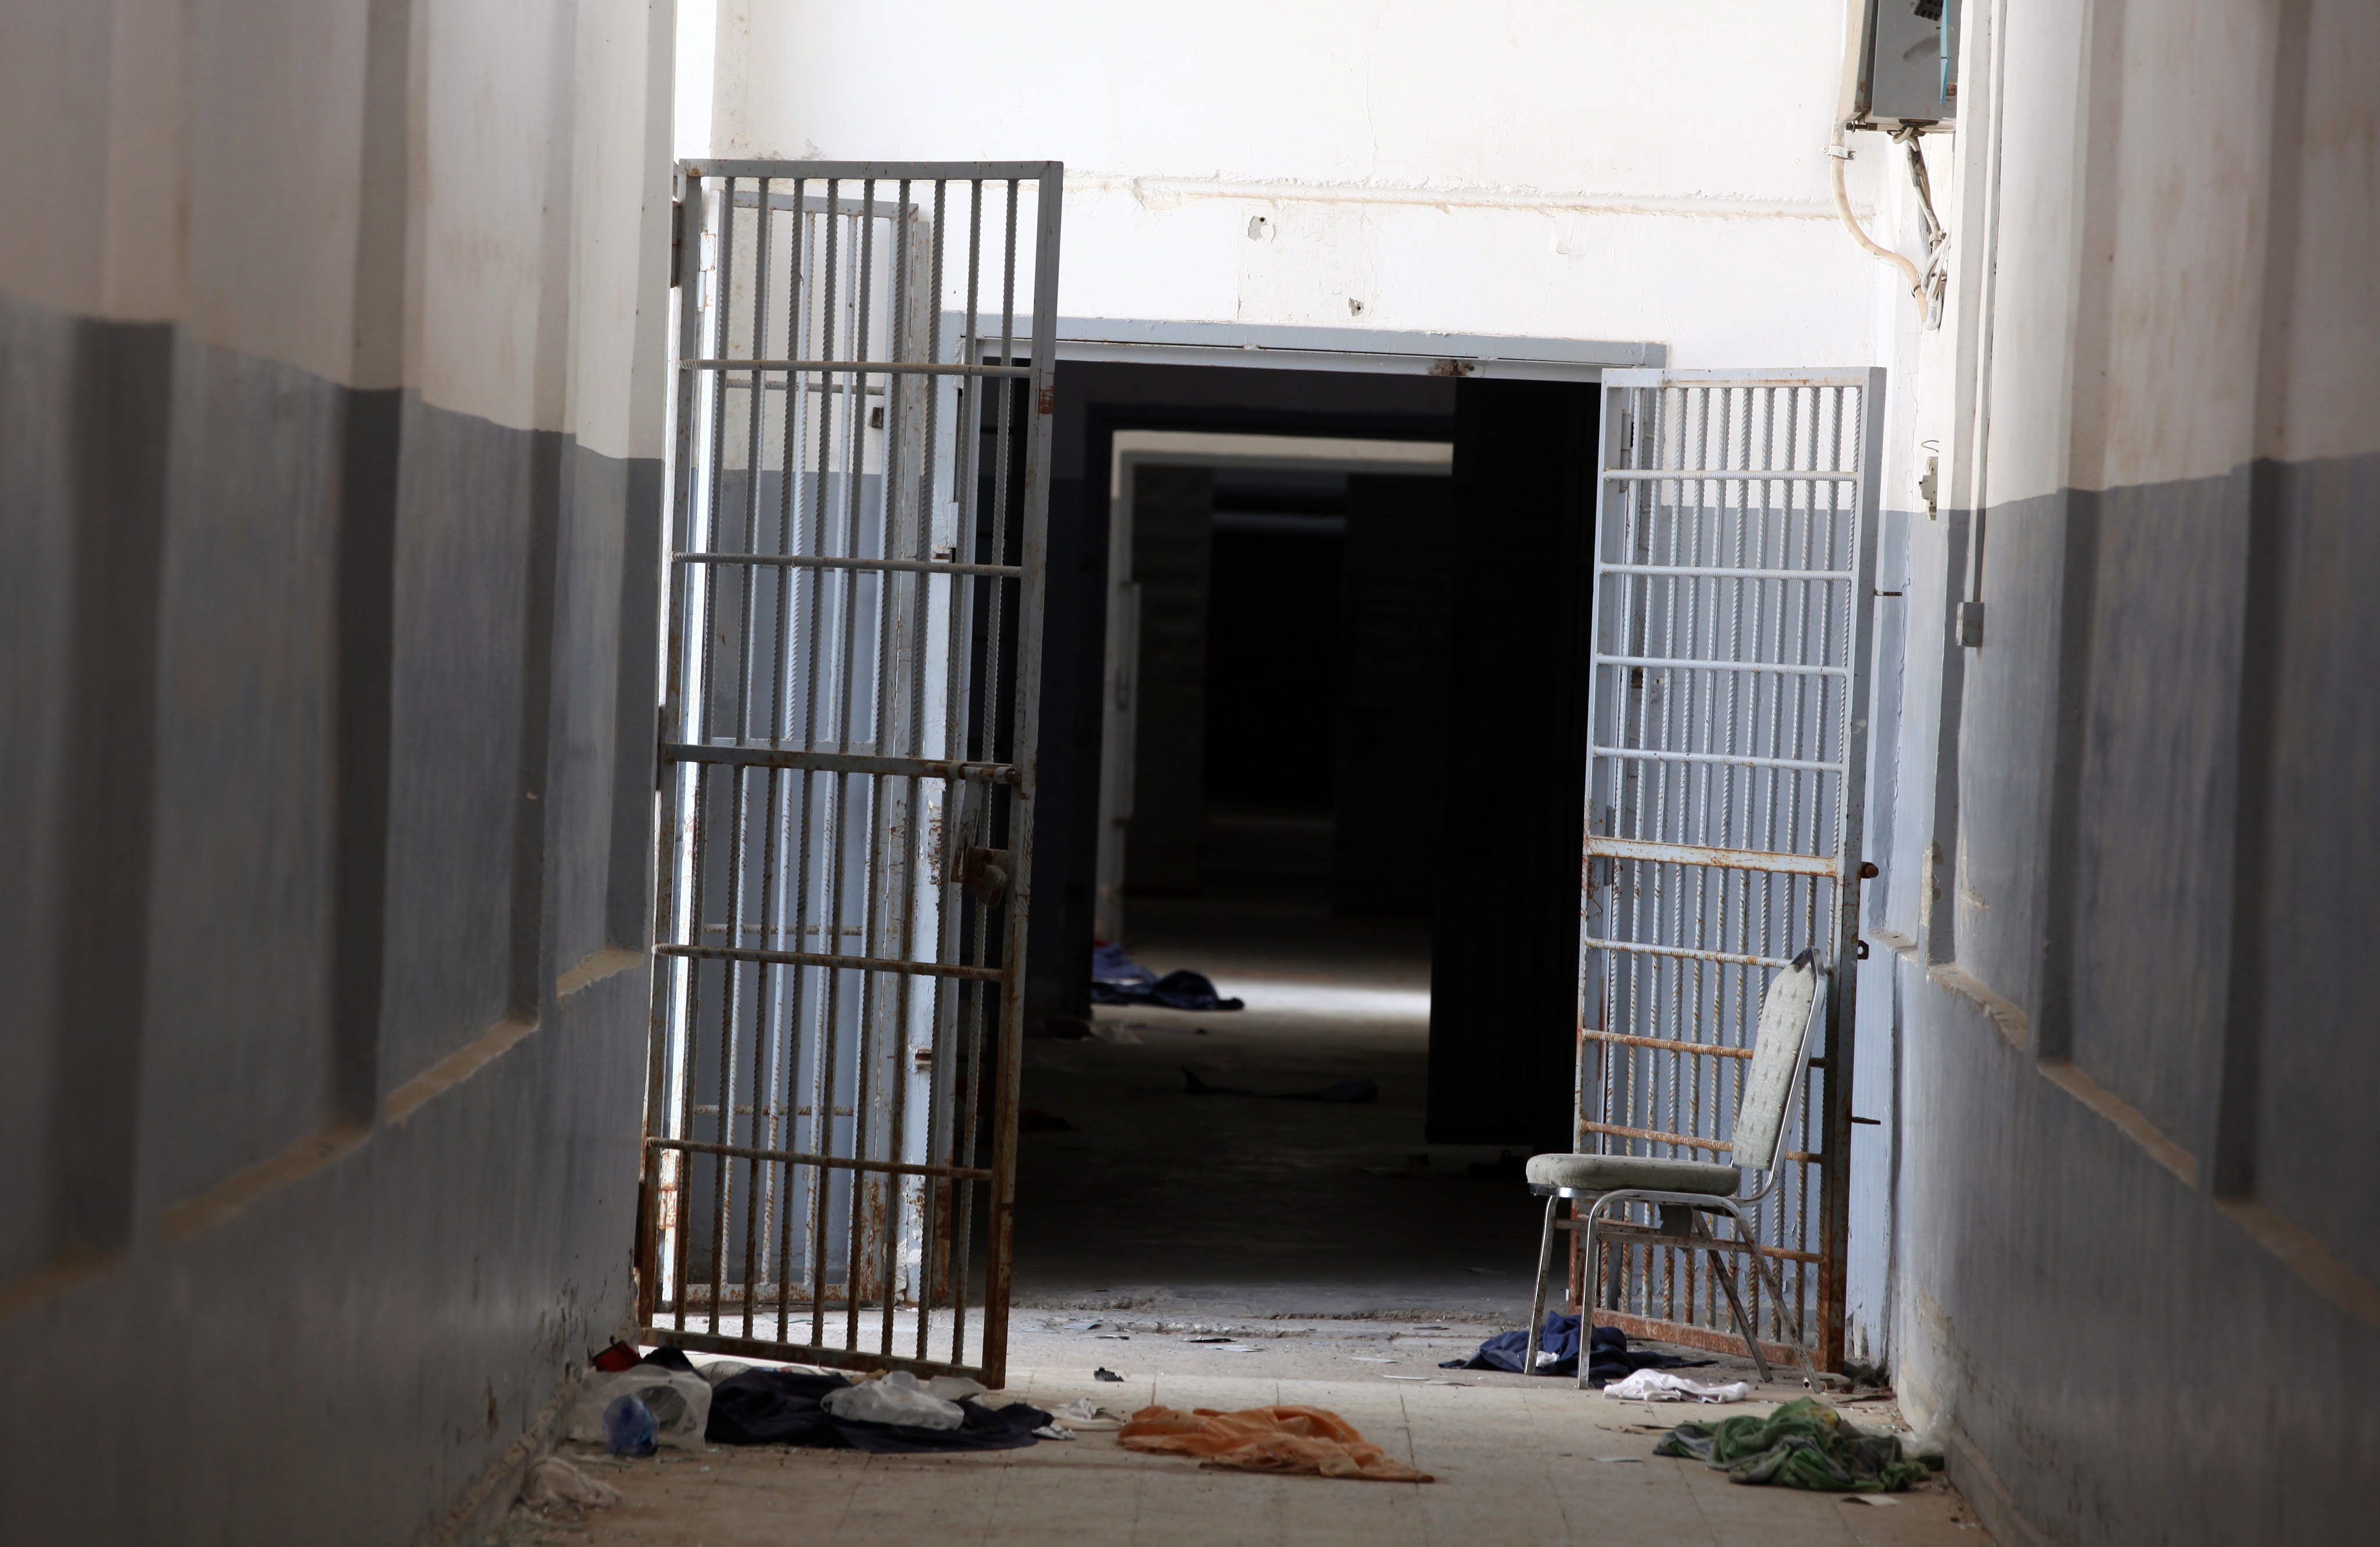 ΟΗΕ: Καταγγελίες για βασανιστήρια σε κρατουμένους στην Λιβύη